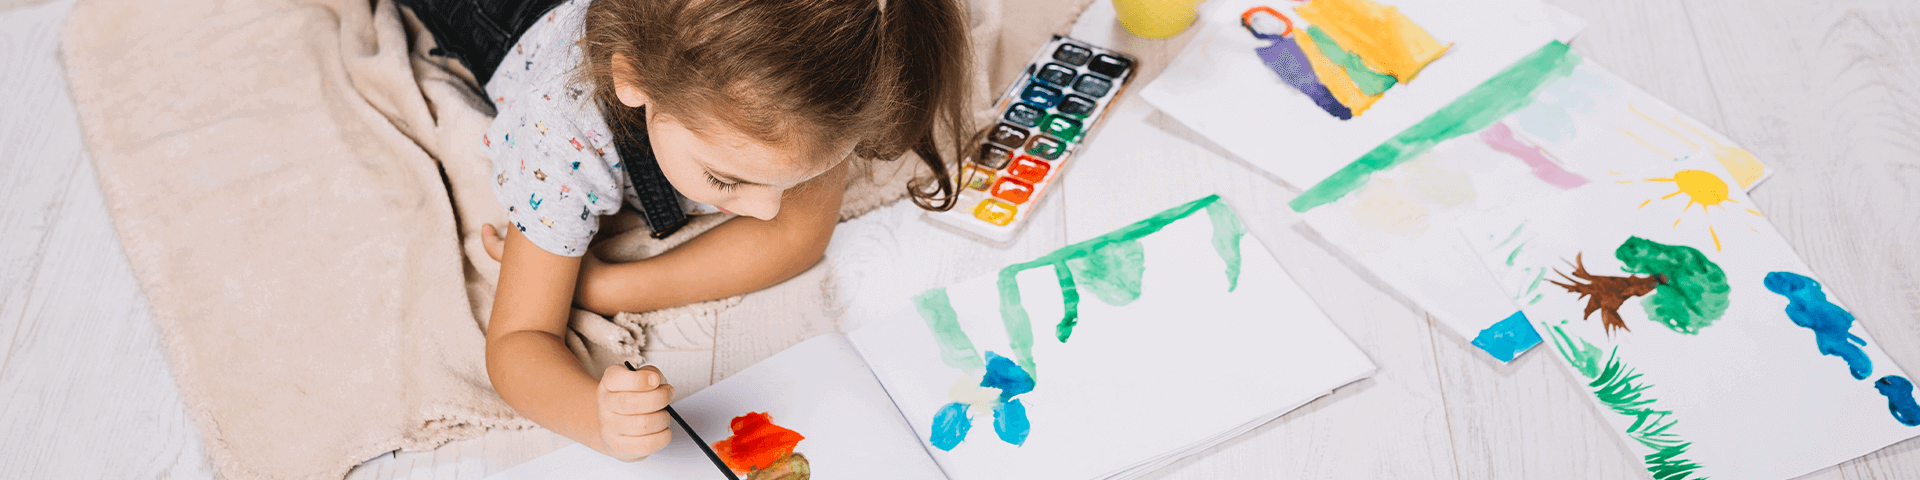 Detección de problemas de aprendizaje en niños y niñas a través de la escritura y dibujo